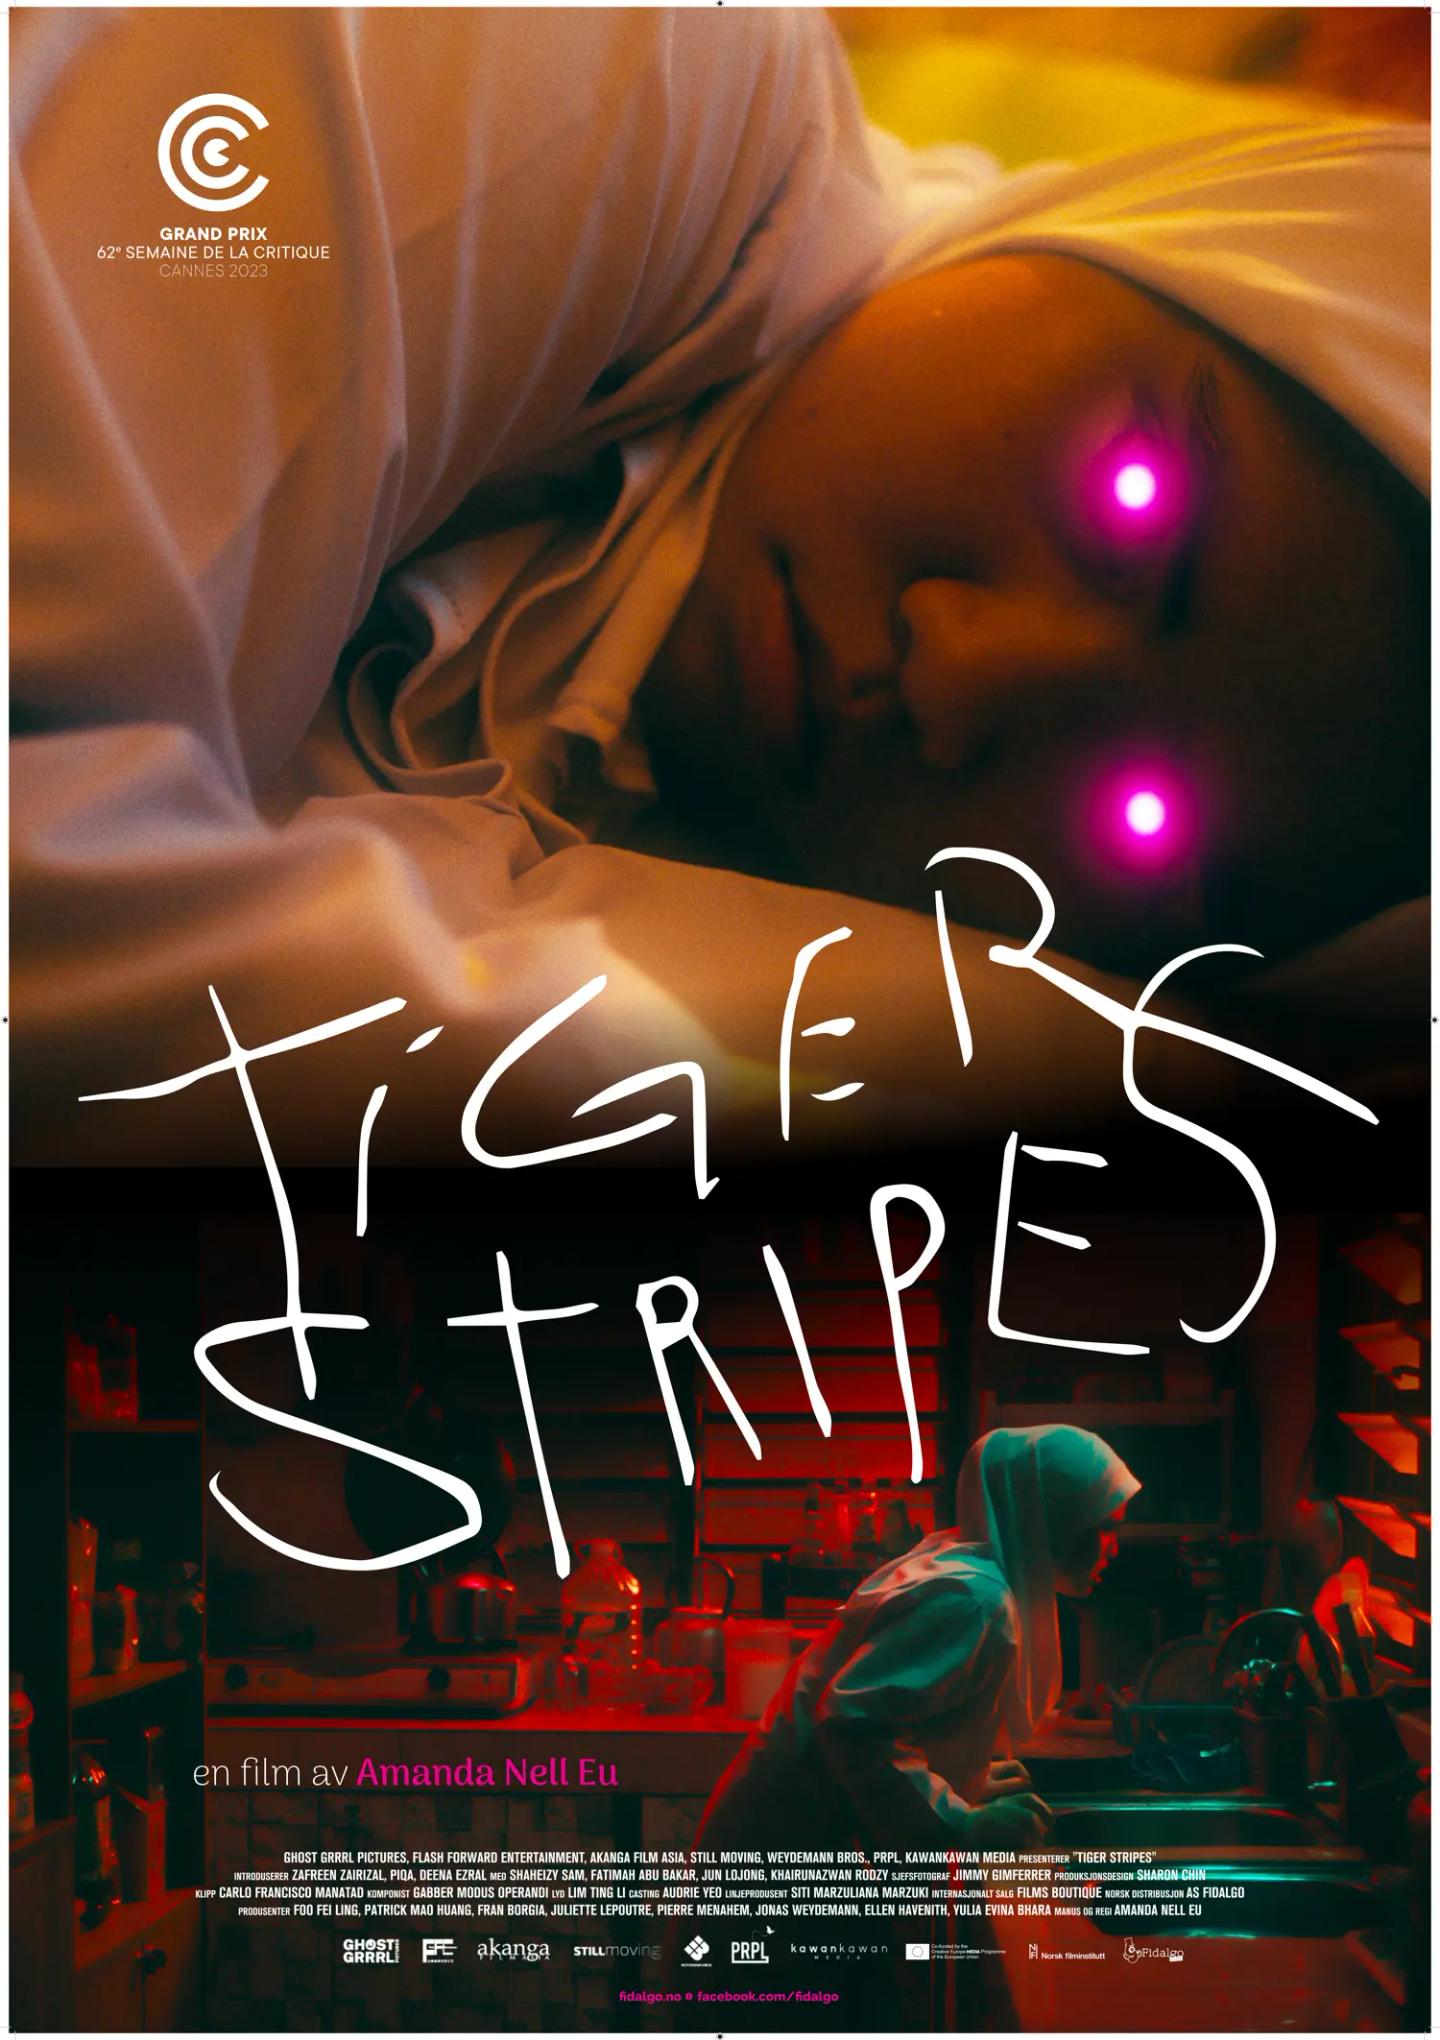 Plakat for 'Tiger Stripes'